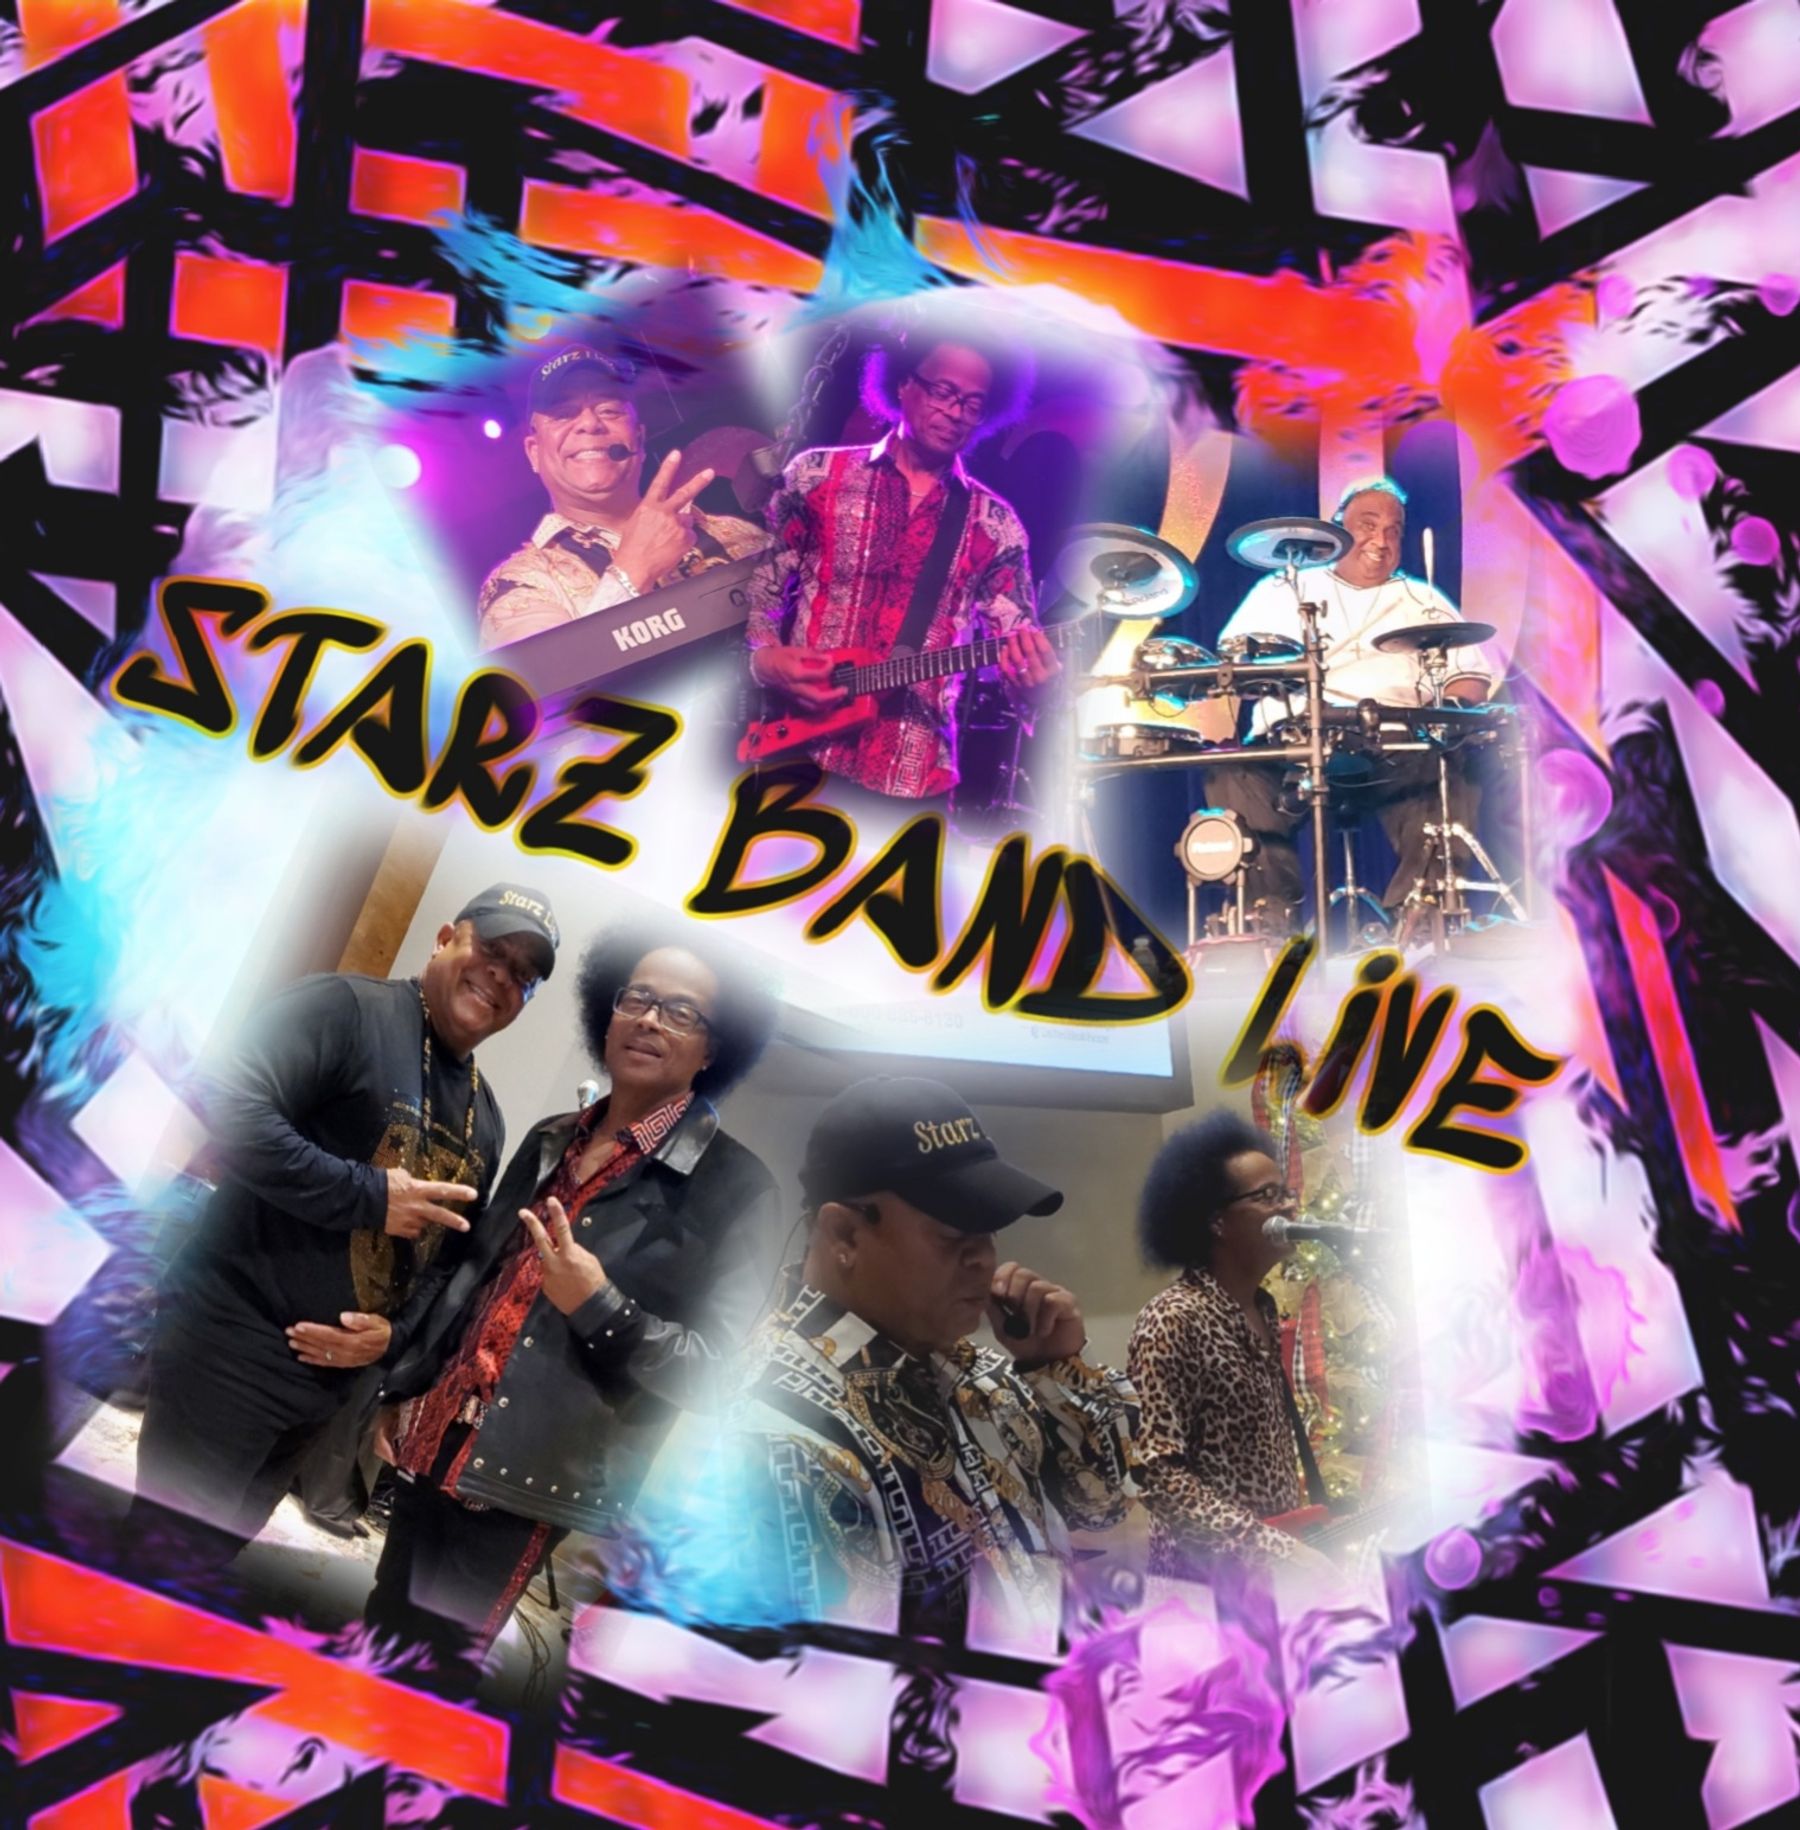 starz band tour